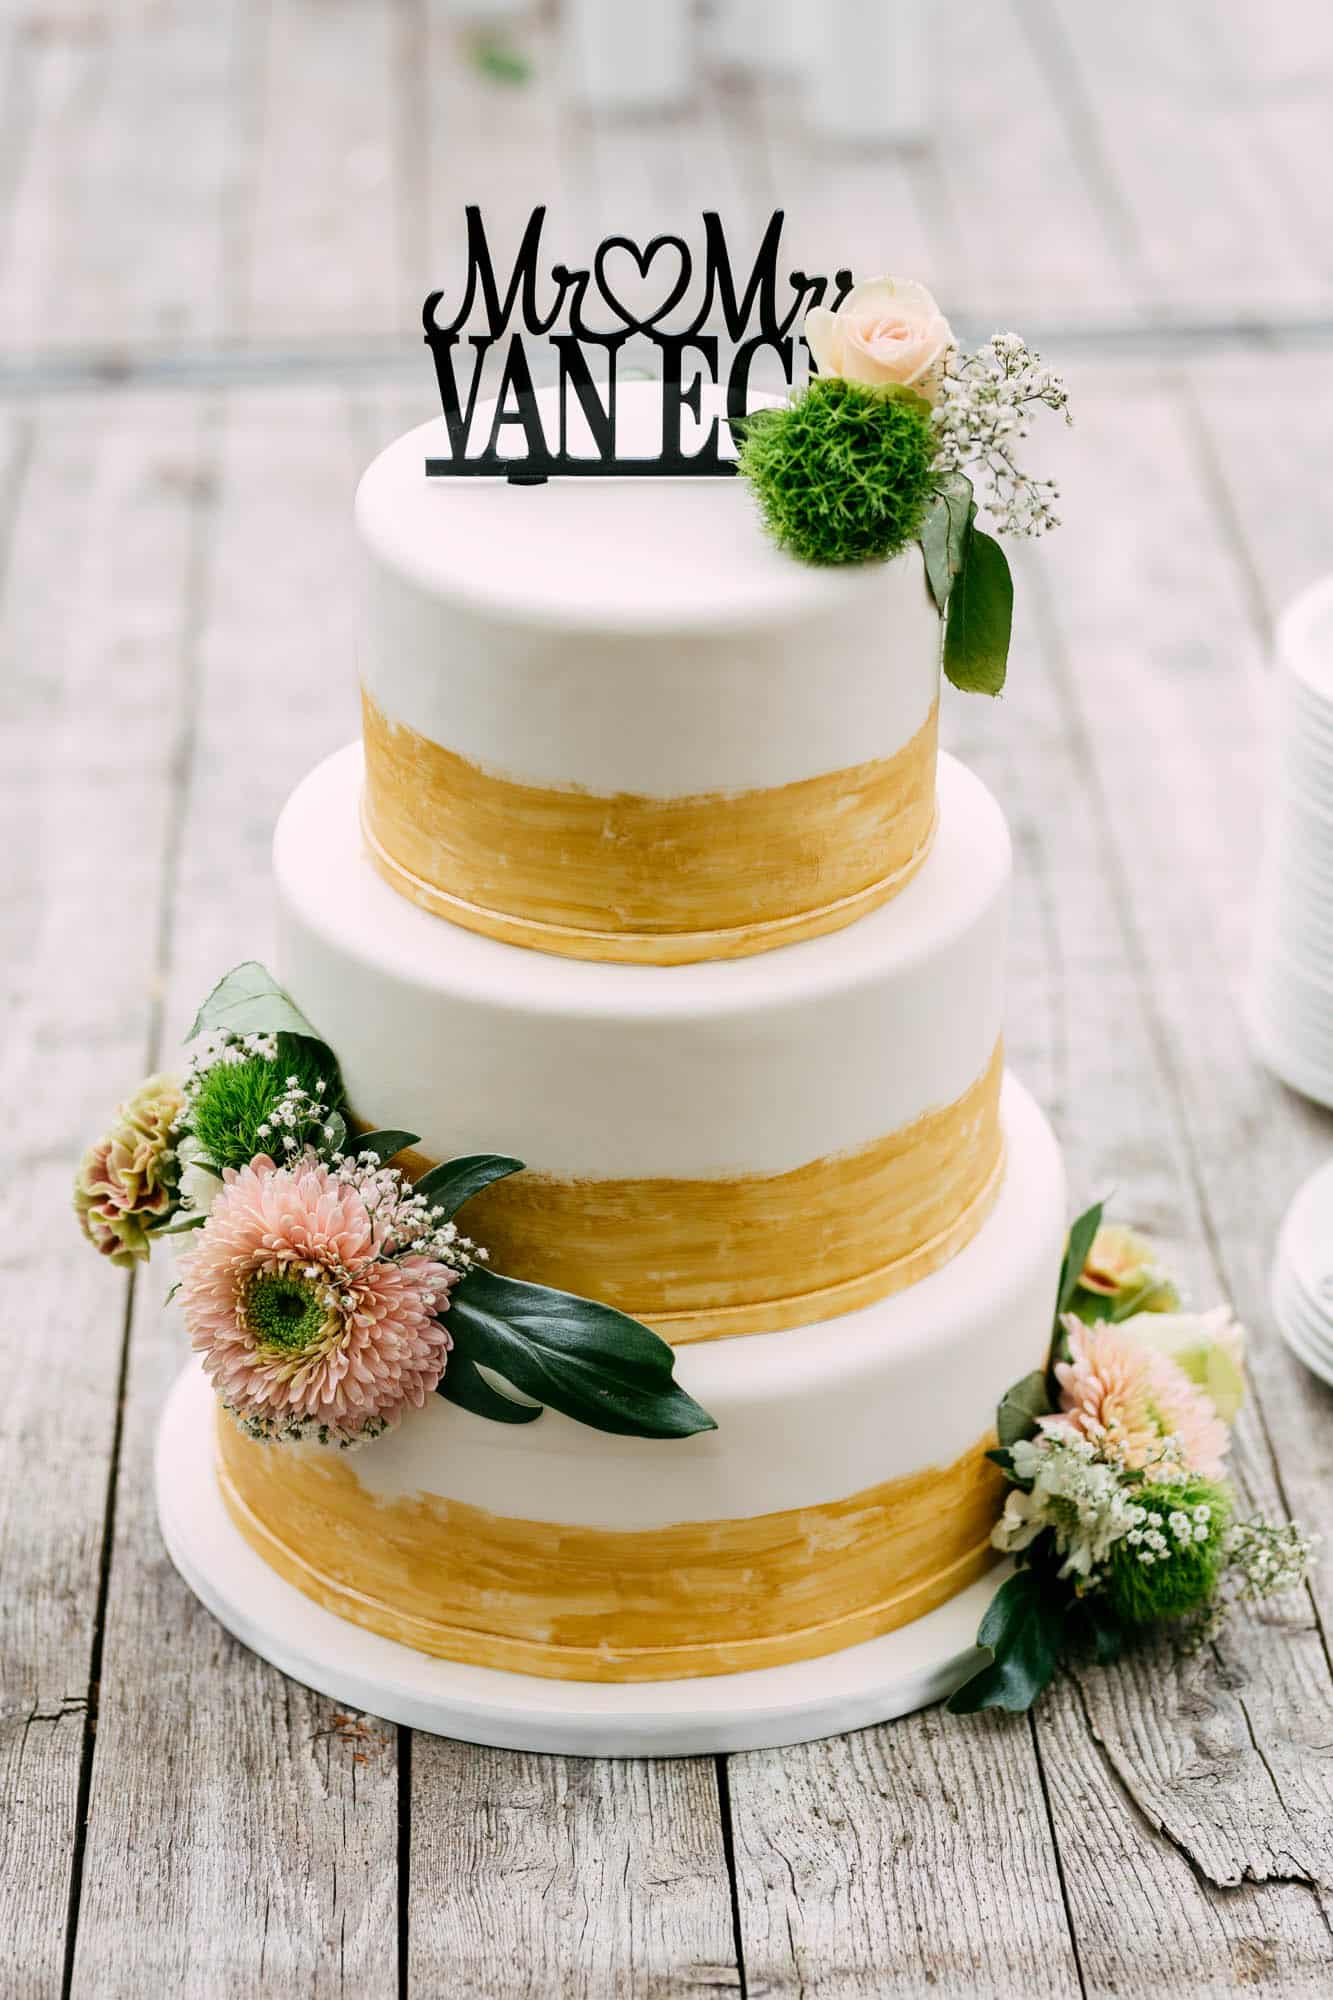   Wedding cakes